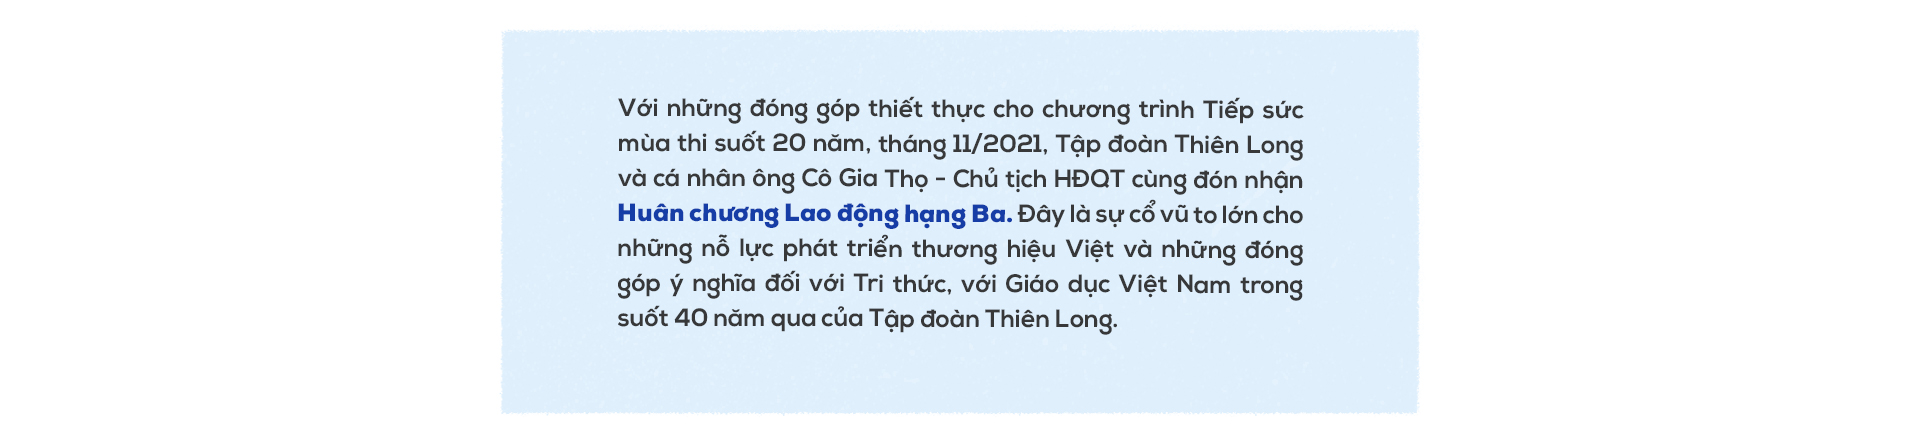 Hành trình 40 năm gắn bó với tri thức Việt của Tập đoàn Thiên Long - Ảnh 12.